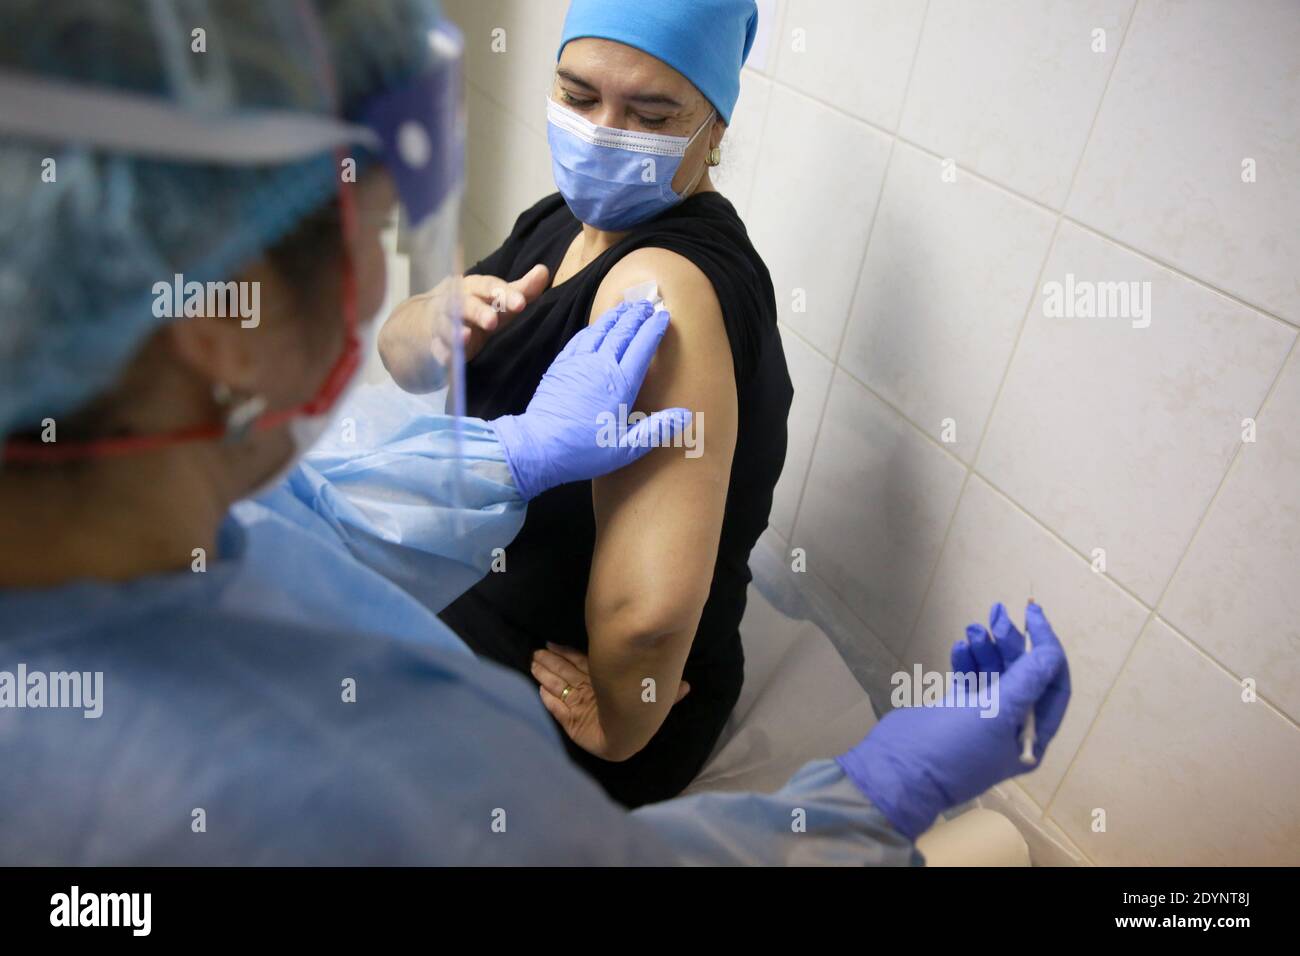 BUKAREST, RUMÄNIEN - 27. Dezember 2020: Ein Mitglied des medizinischen Personals erhält den kovidierten Impfstoff am ersten Tag der europäischen Impfkampagne. Stockfoto